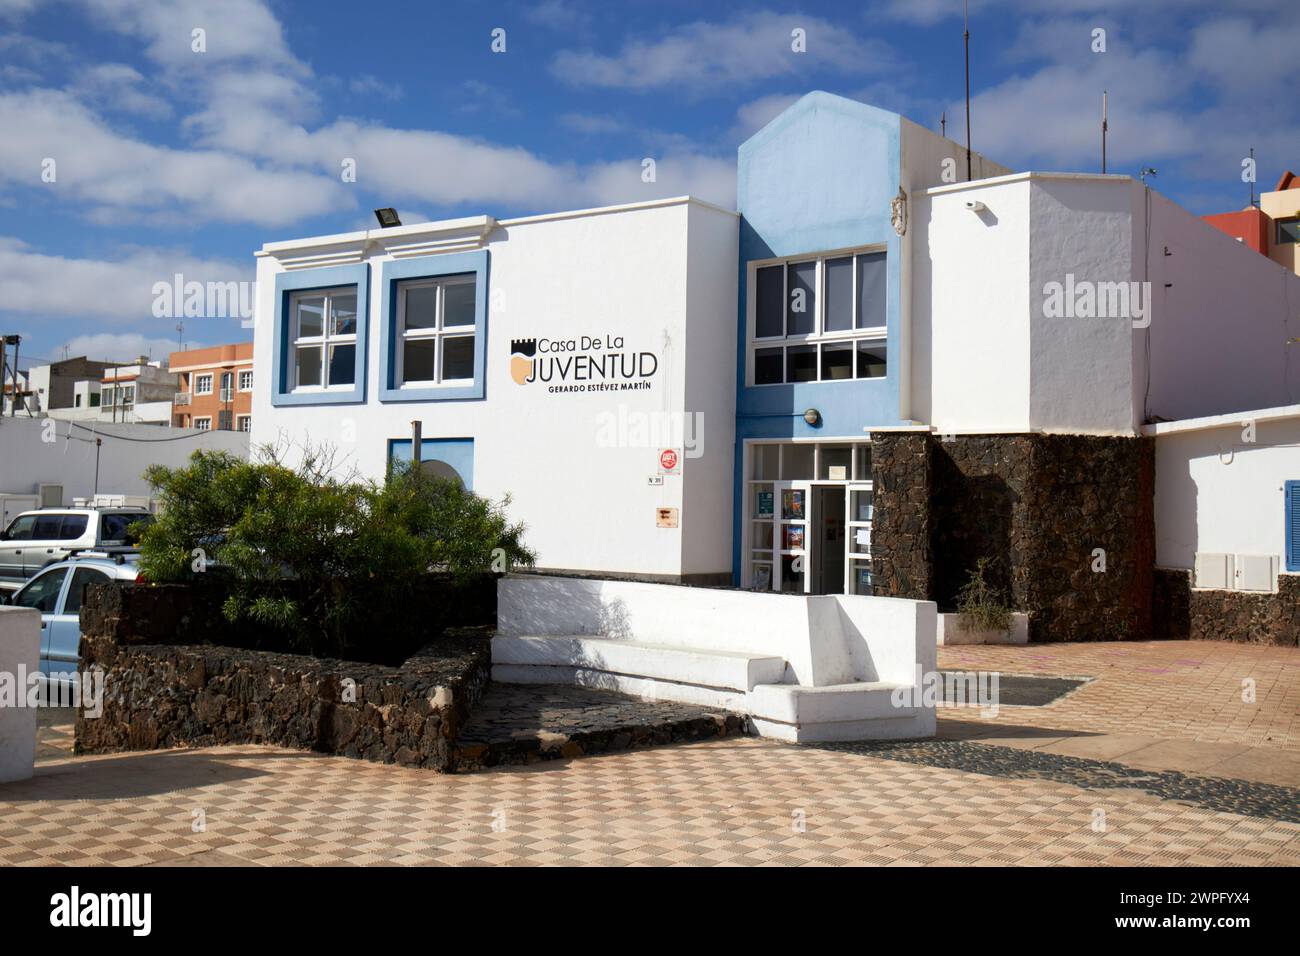 casa de la juventud youth house club Corralejo, fuerteventura, Canary Islands, spain Stock Photo